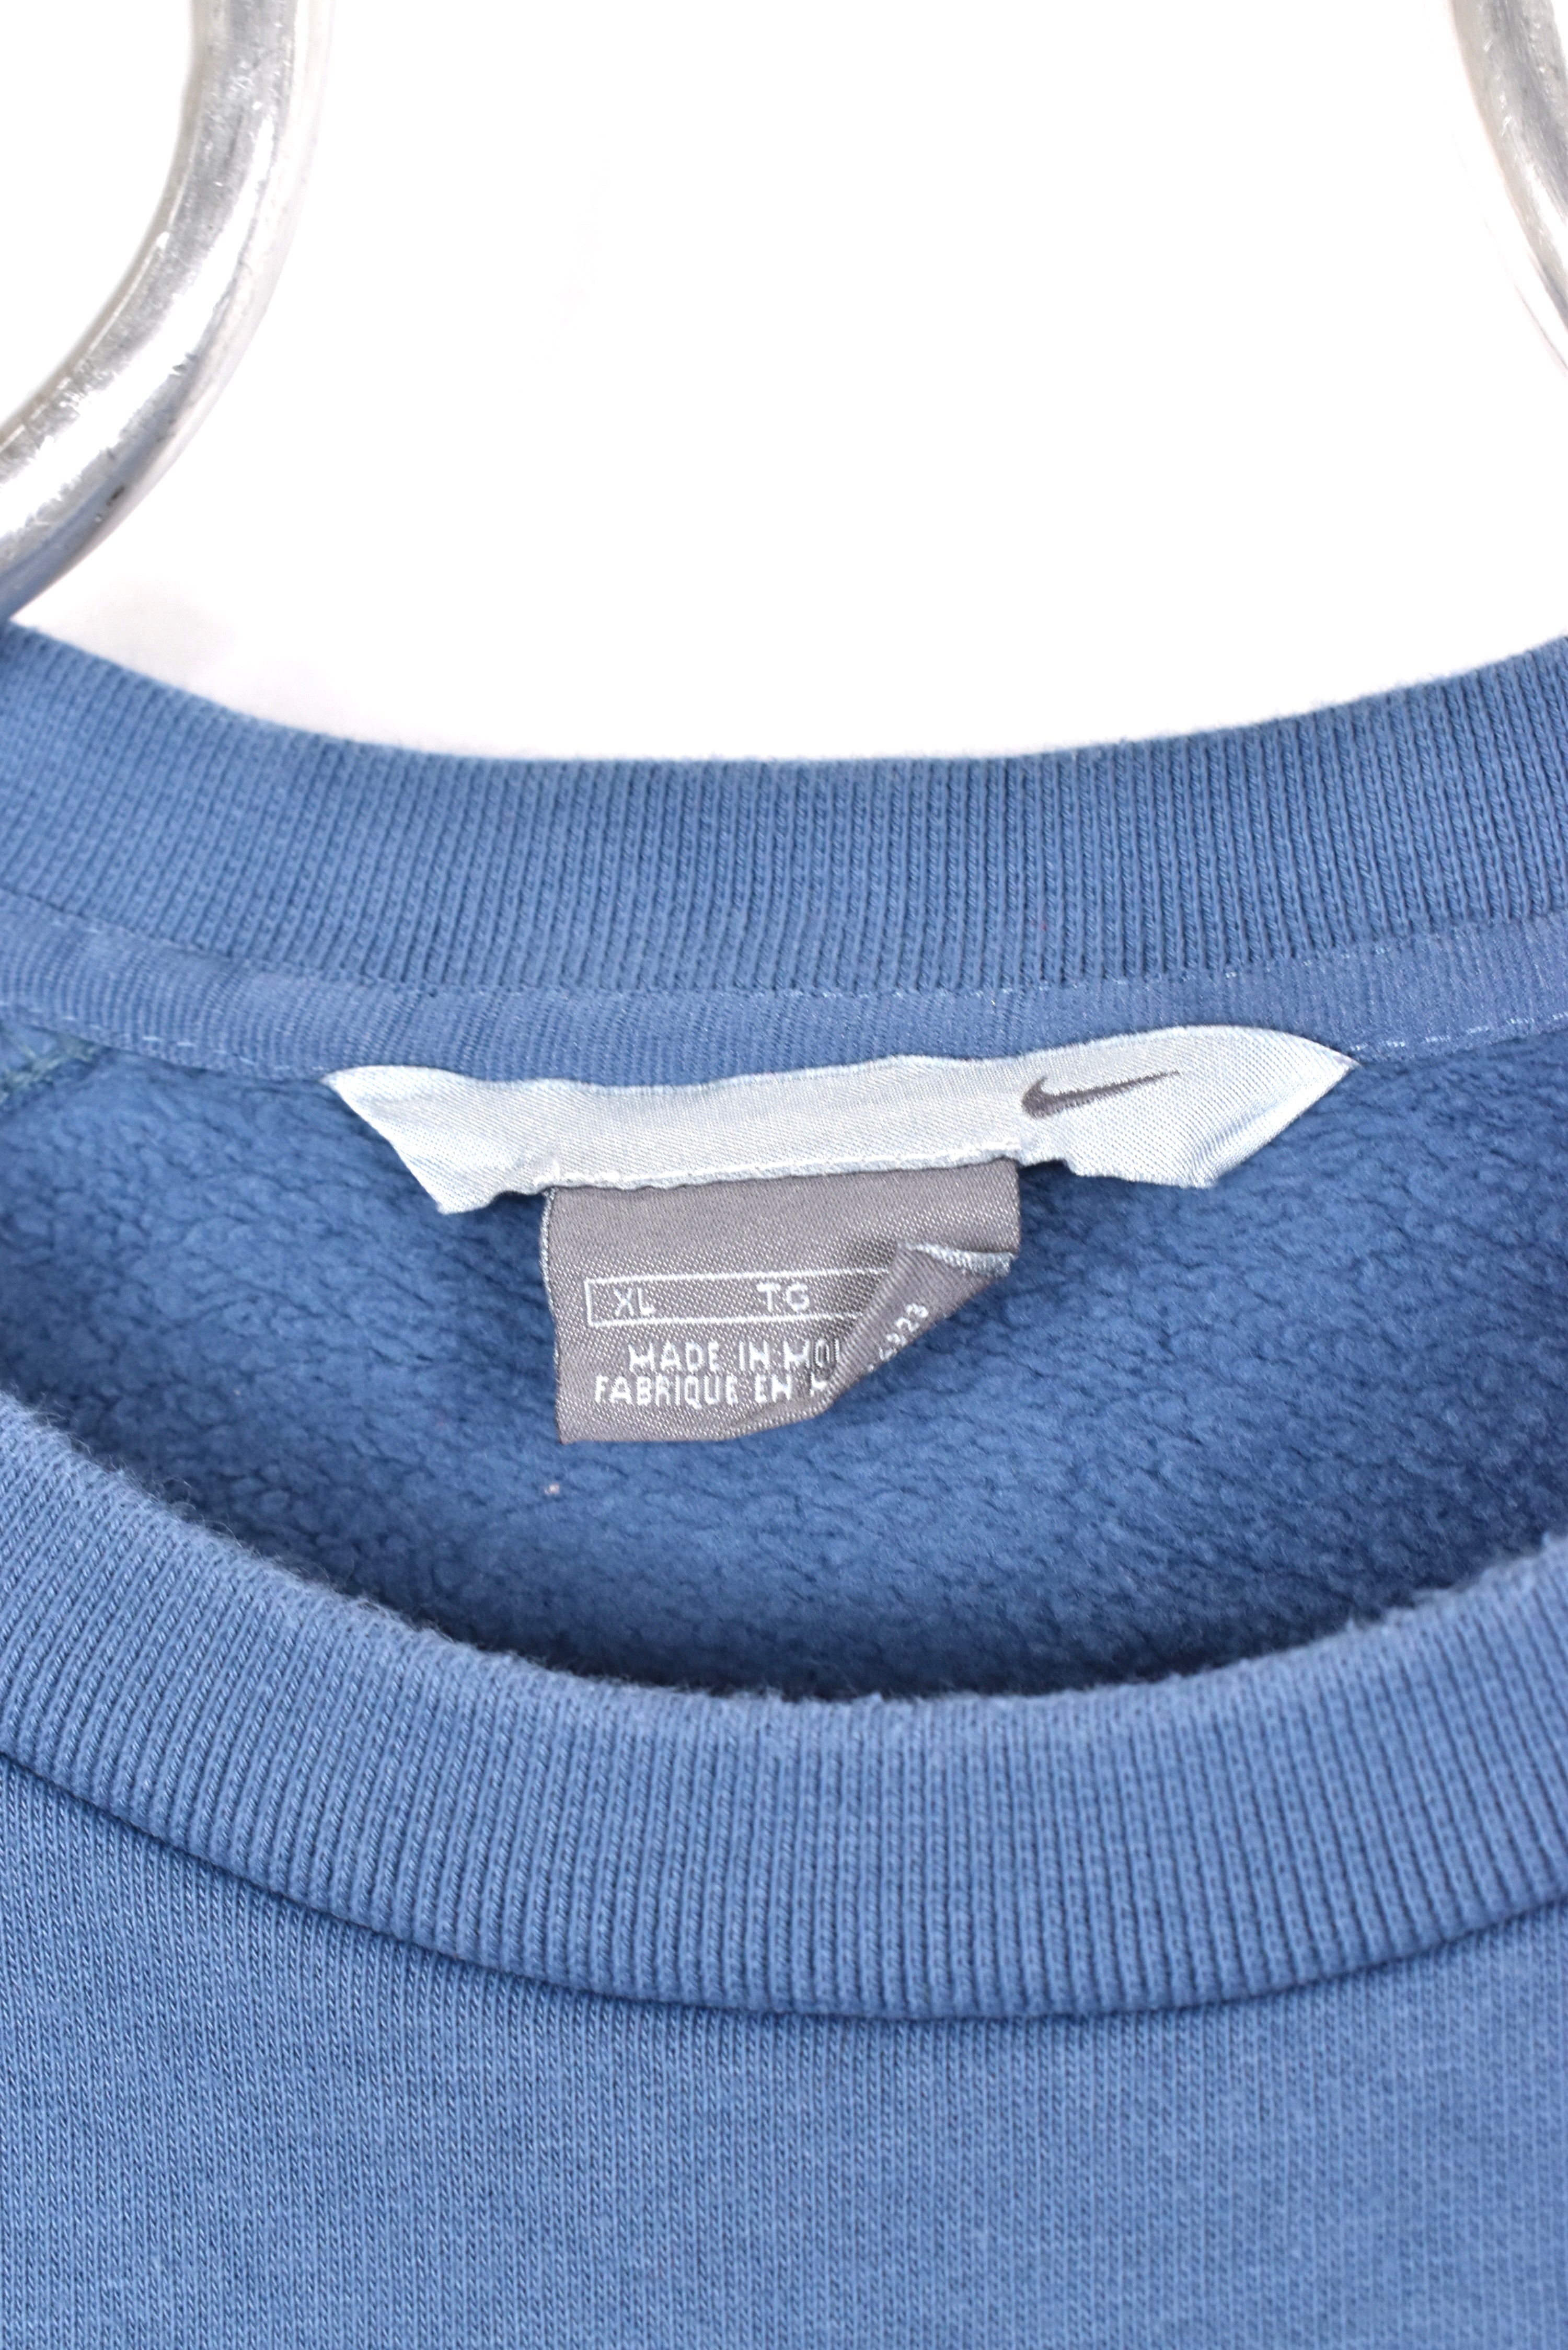 Vintage Nike sweatshirt, blue embroidered crewneck - AU XL NIKE